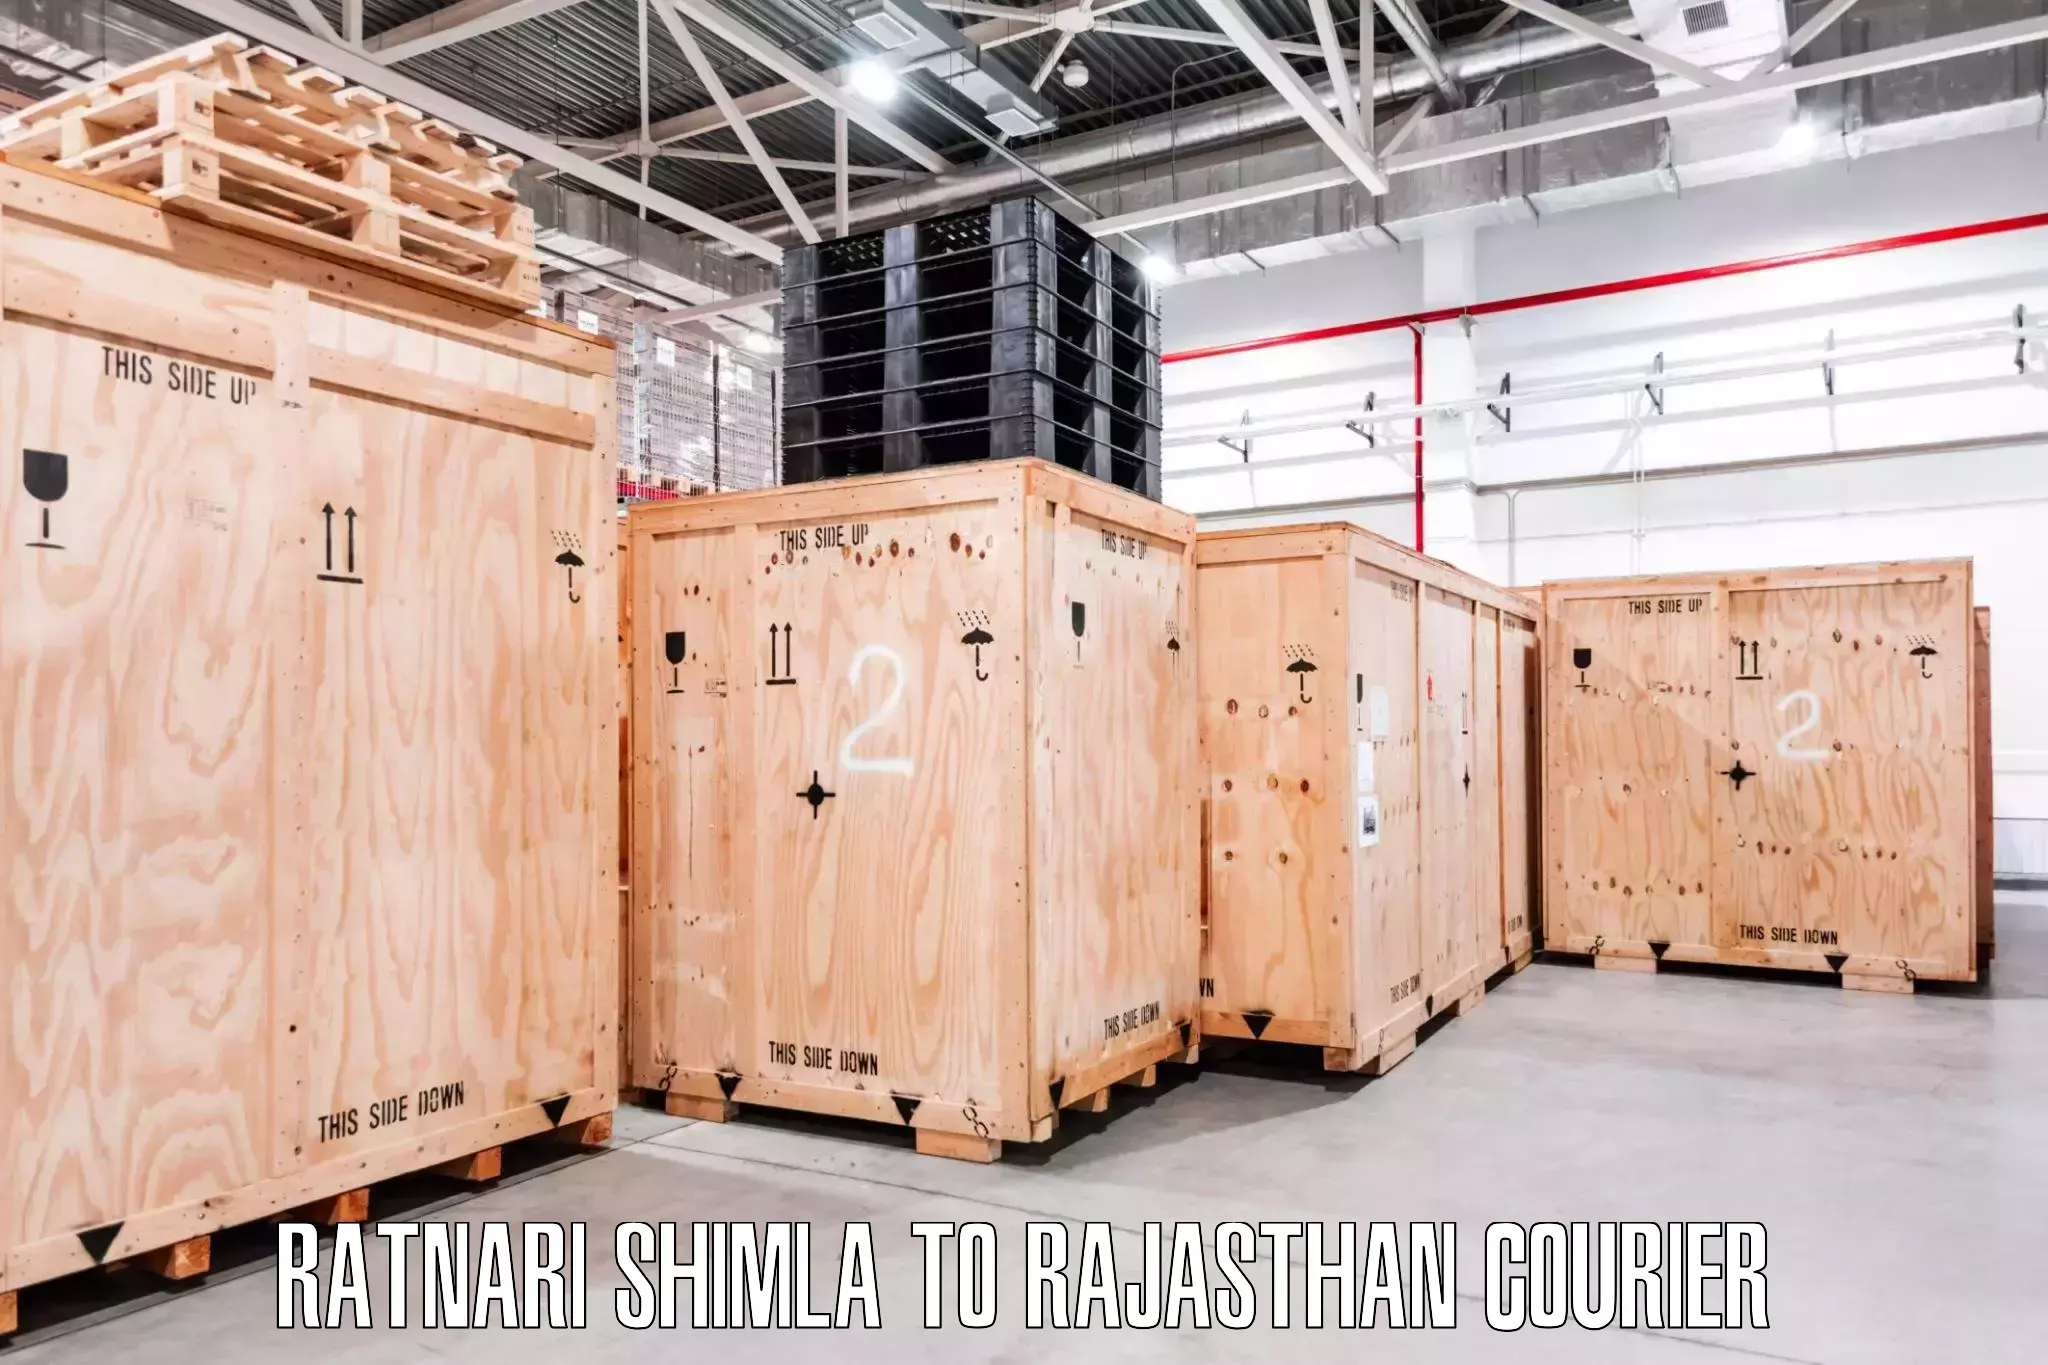 Skilled furniture movers Ratnari Shimla to Khairthal